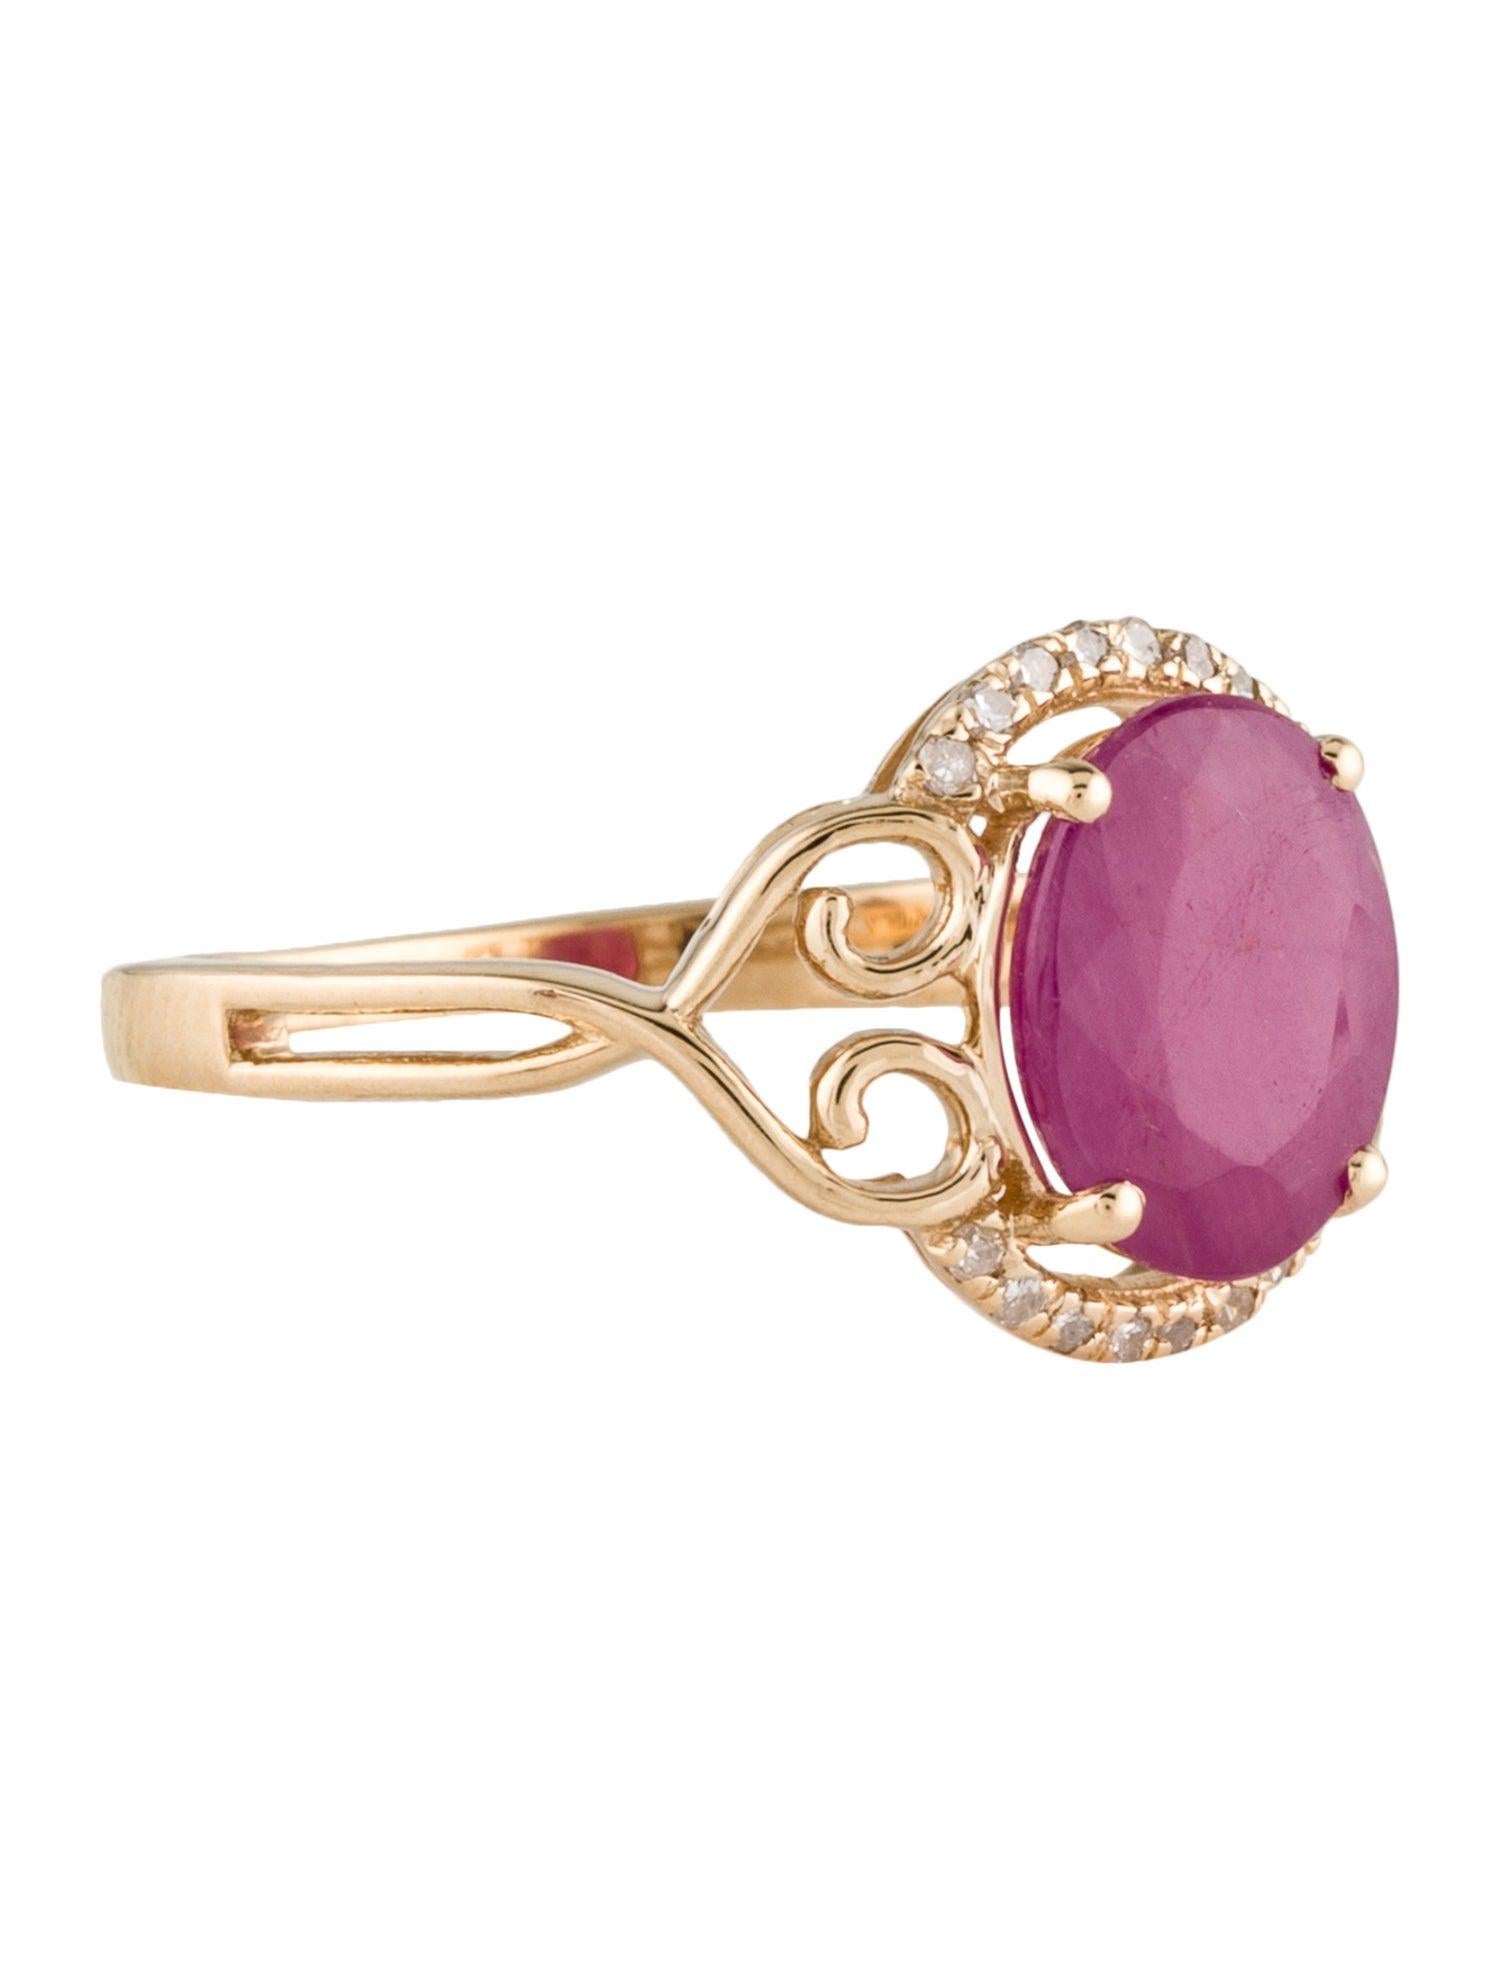 Lassen Sie sich von den leidenschaftlichen Blüten der Natur verführen - mit unserem ovalen Ring Blooms of Passion mit Rubin und Diamant von Jeweltique. Dieses exquisite Stück ist ein Beweis für die sorgfältige Handwerkskunst und zeitlose Eleganz,